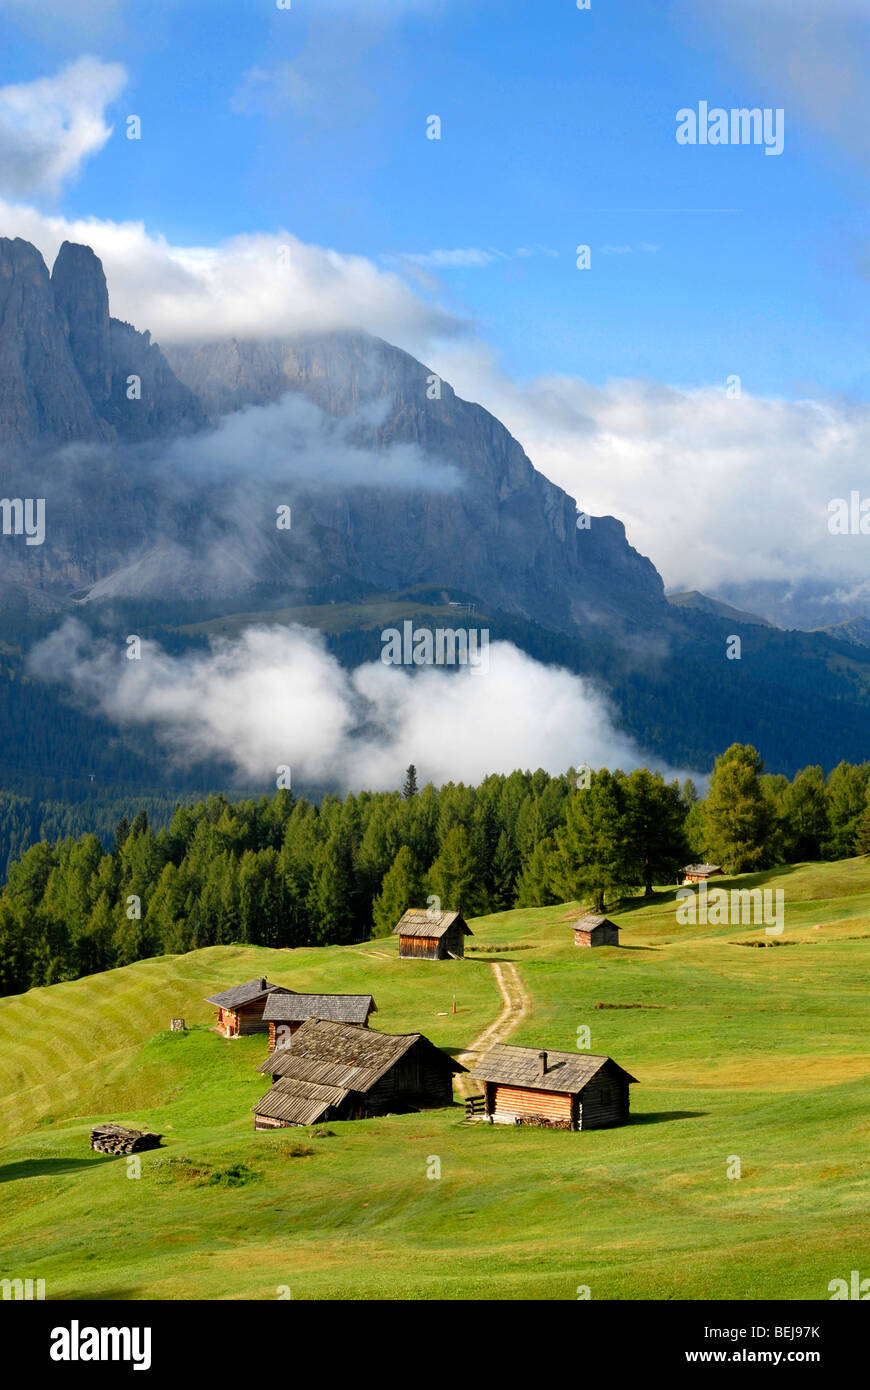 Chalet de montagne, près de Juac refuge, Parc Naturel Puez Odle, vallée de Gardena, Alto Adige, Italie Banque D'Images